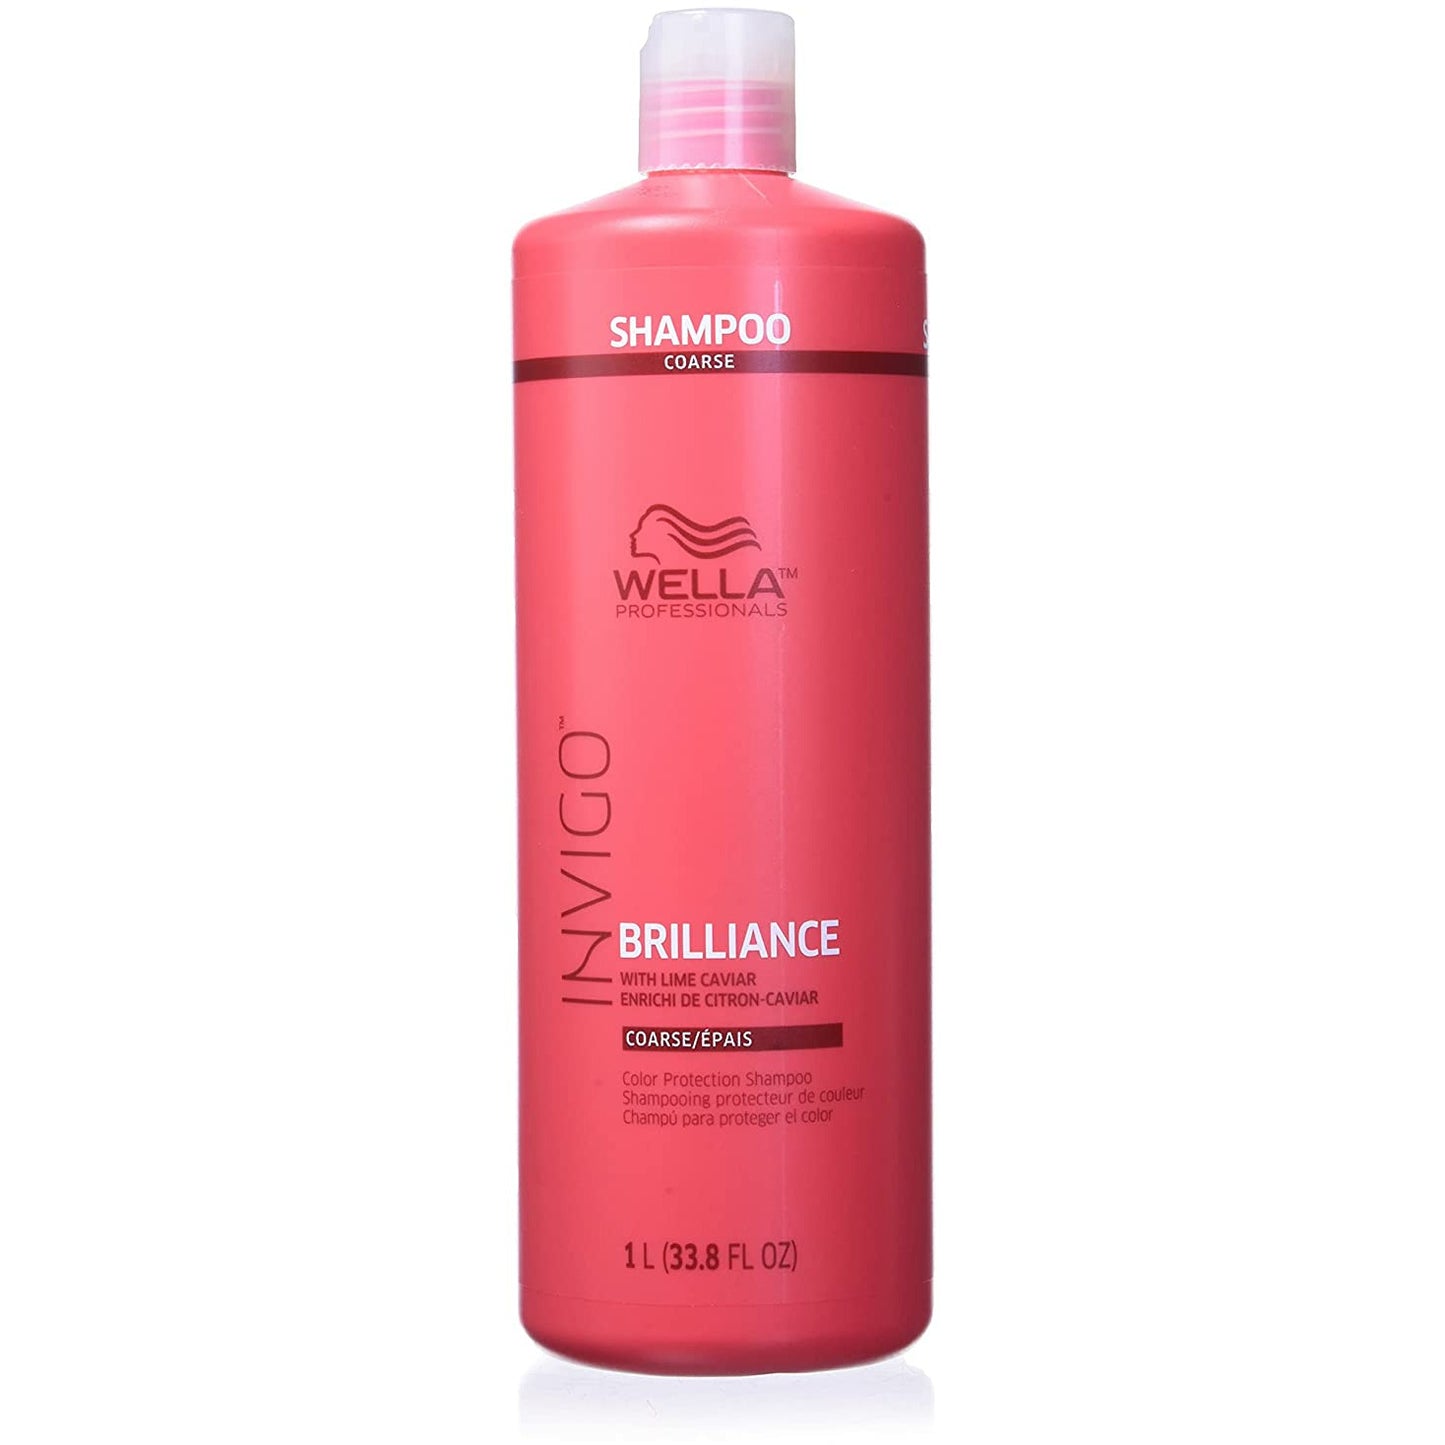 Wella Invigo Brilliance Shampoo for Coarse Hair